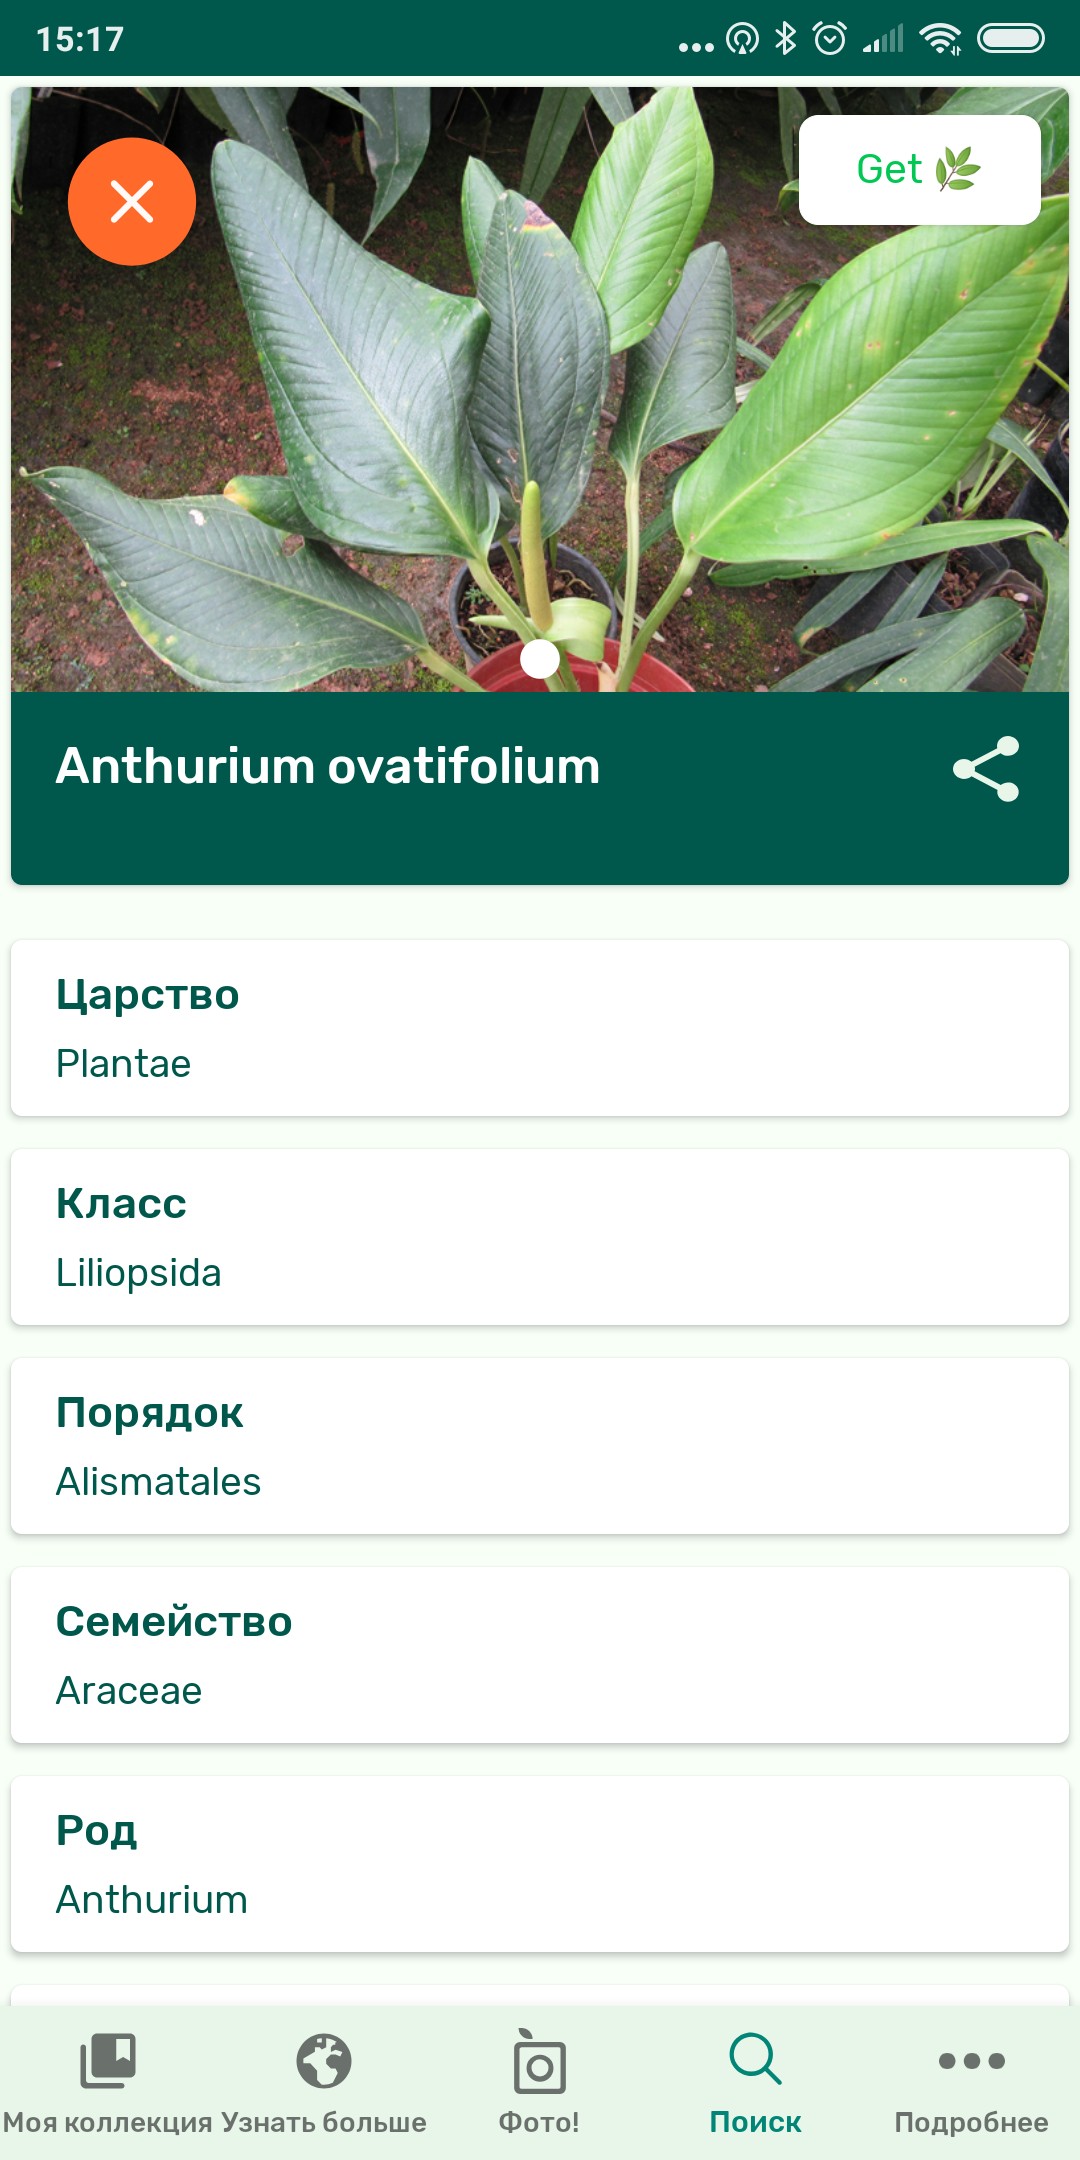 Как распознать растение по фотографии онлайн бесплатно